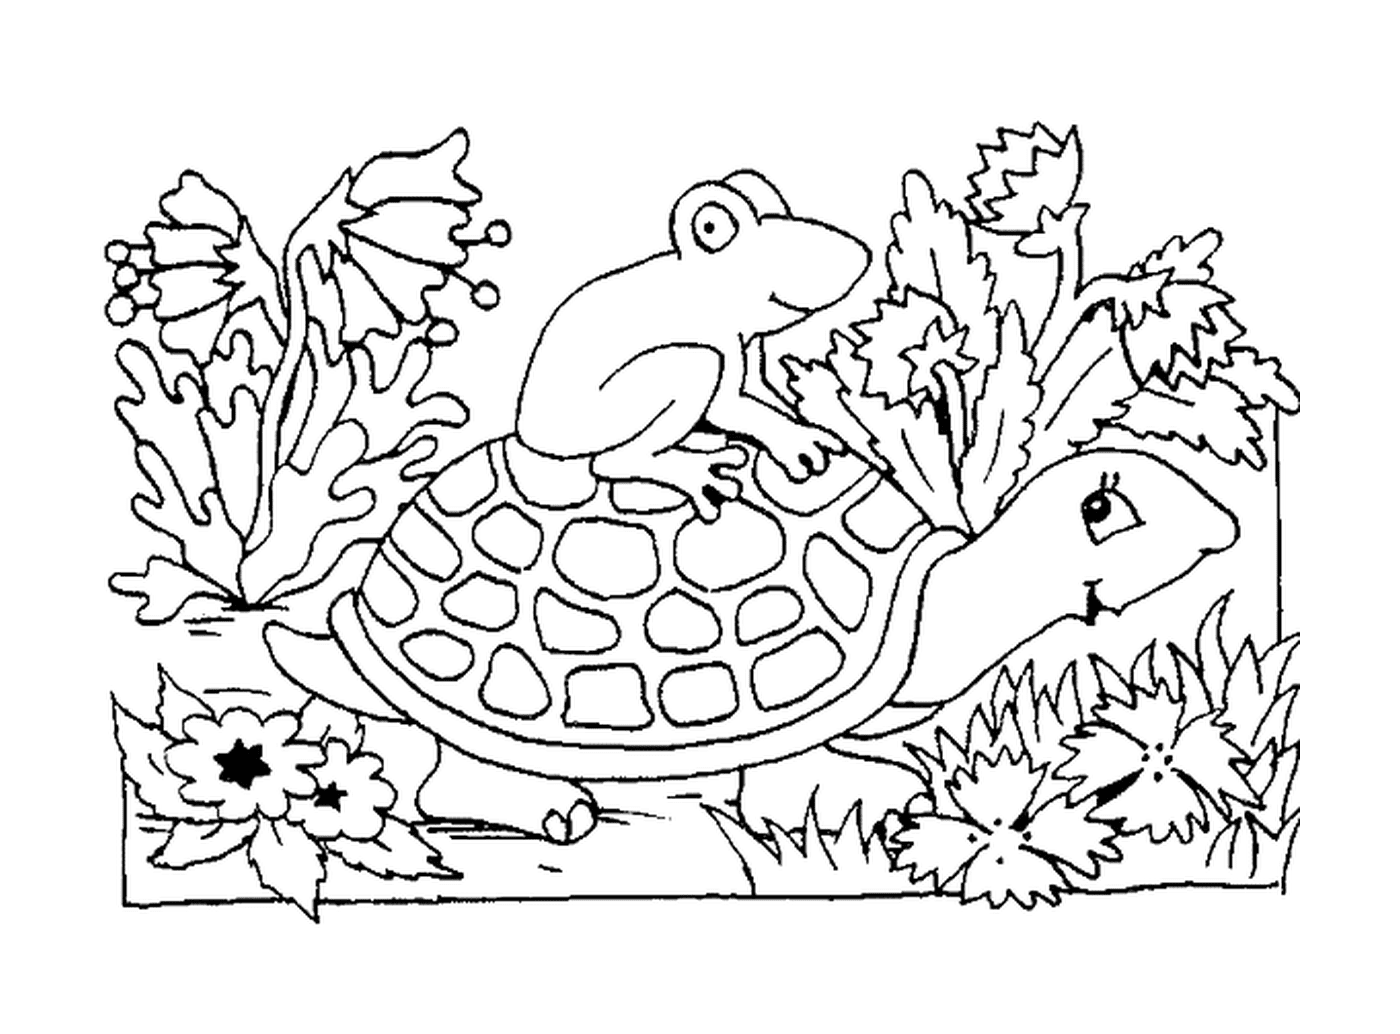  Um sapo sentado em uma concha de tartaruga 